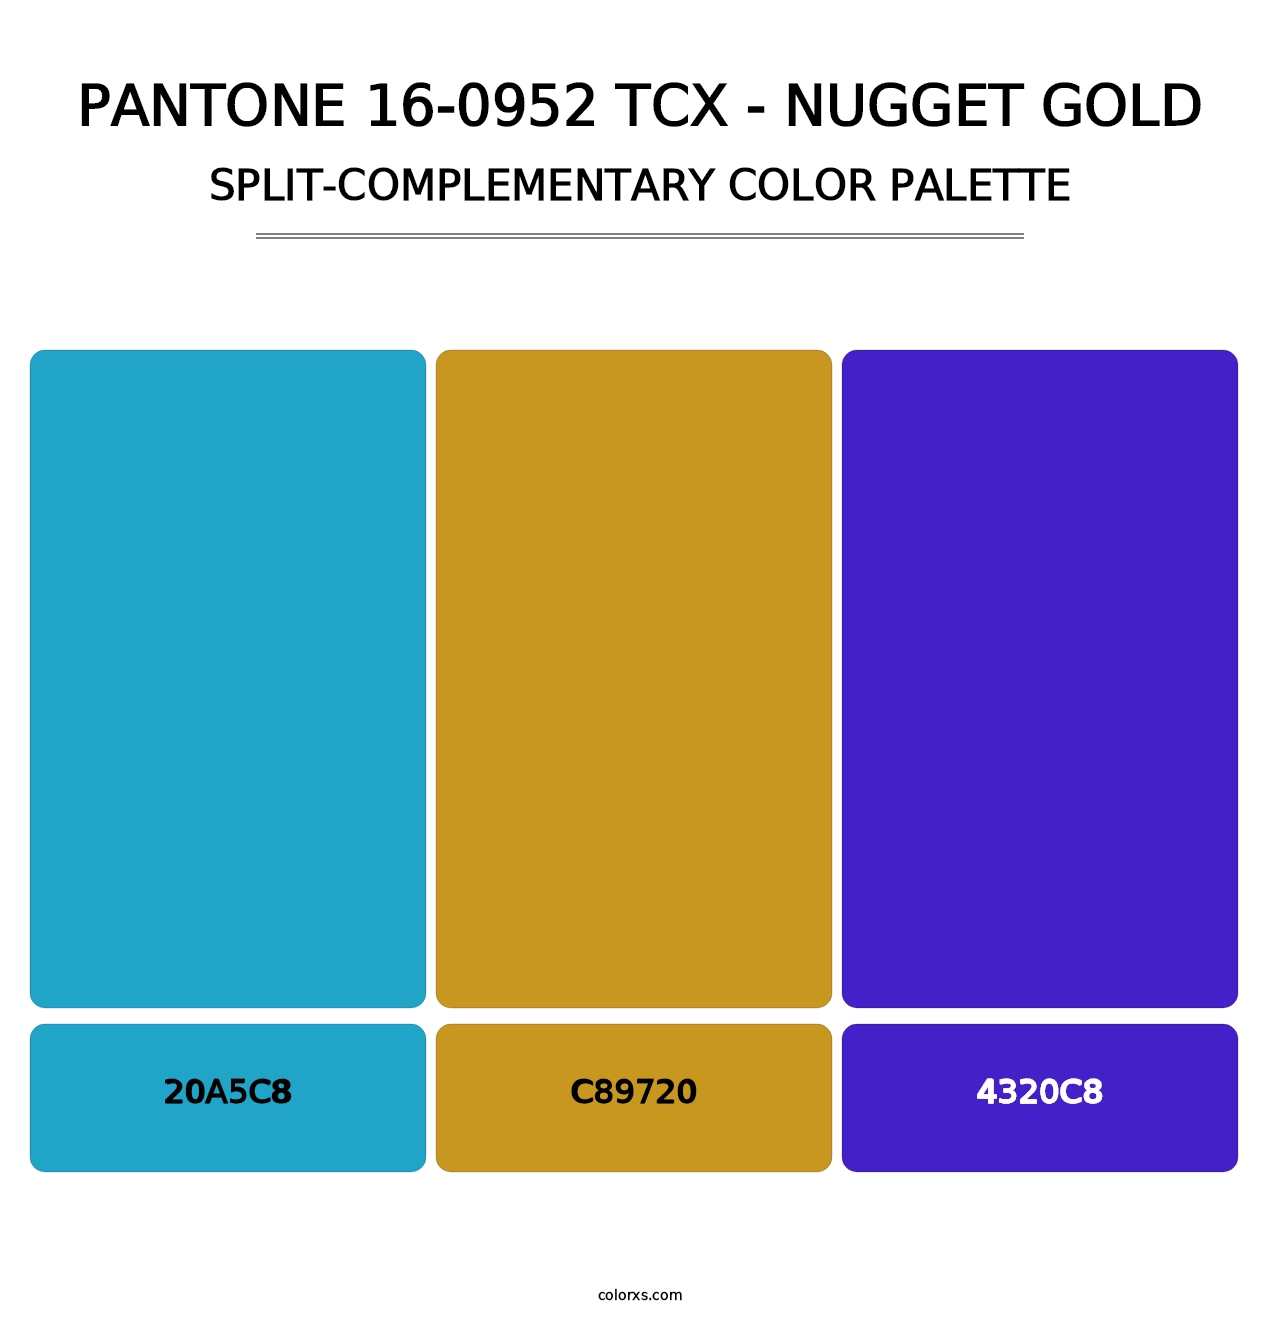 PANTONE 16-0952 TCX - Nugget Gold - Split-Complementary Color Palette